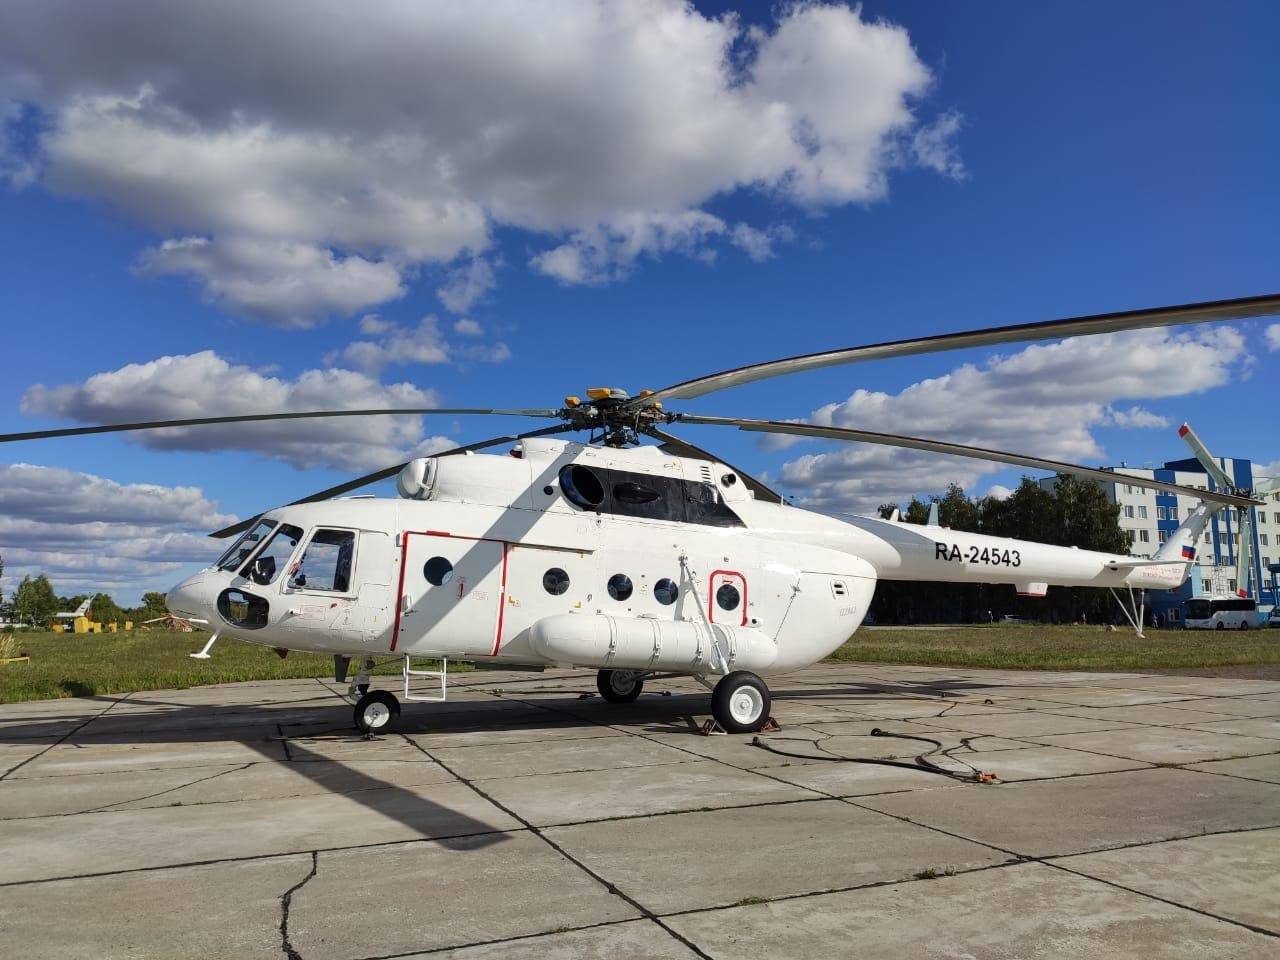 Два отечественных вертолёта будут перевозить пассажиров в Якутии